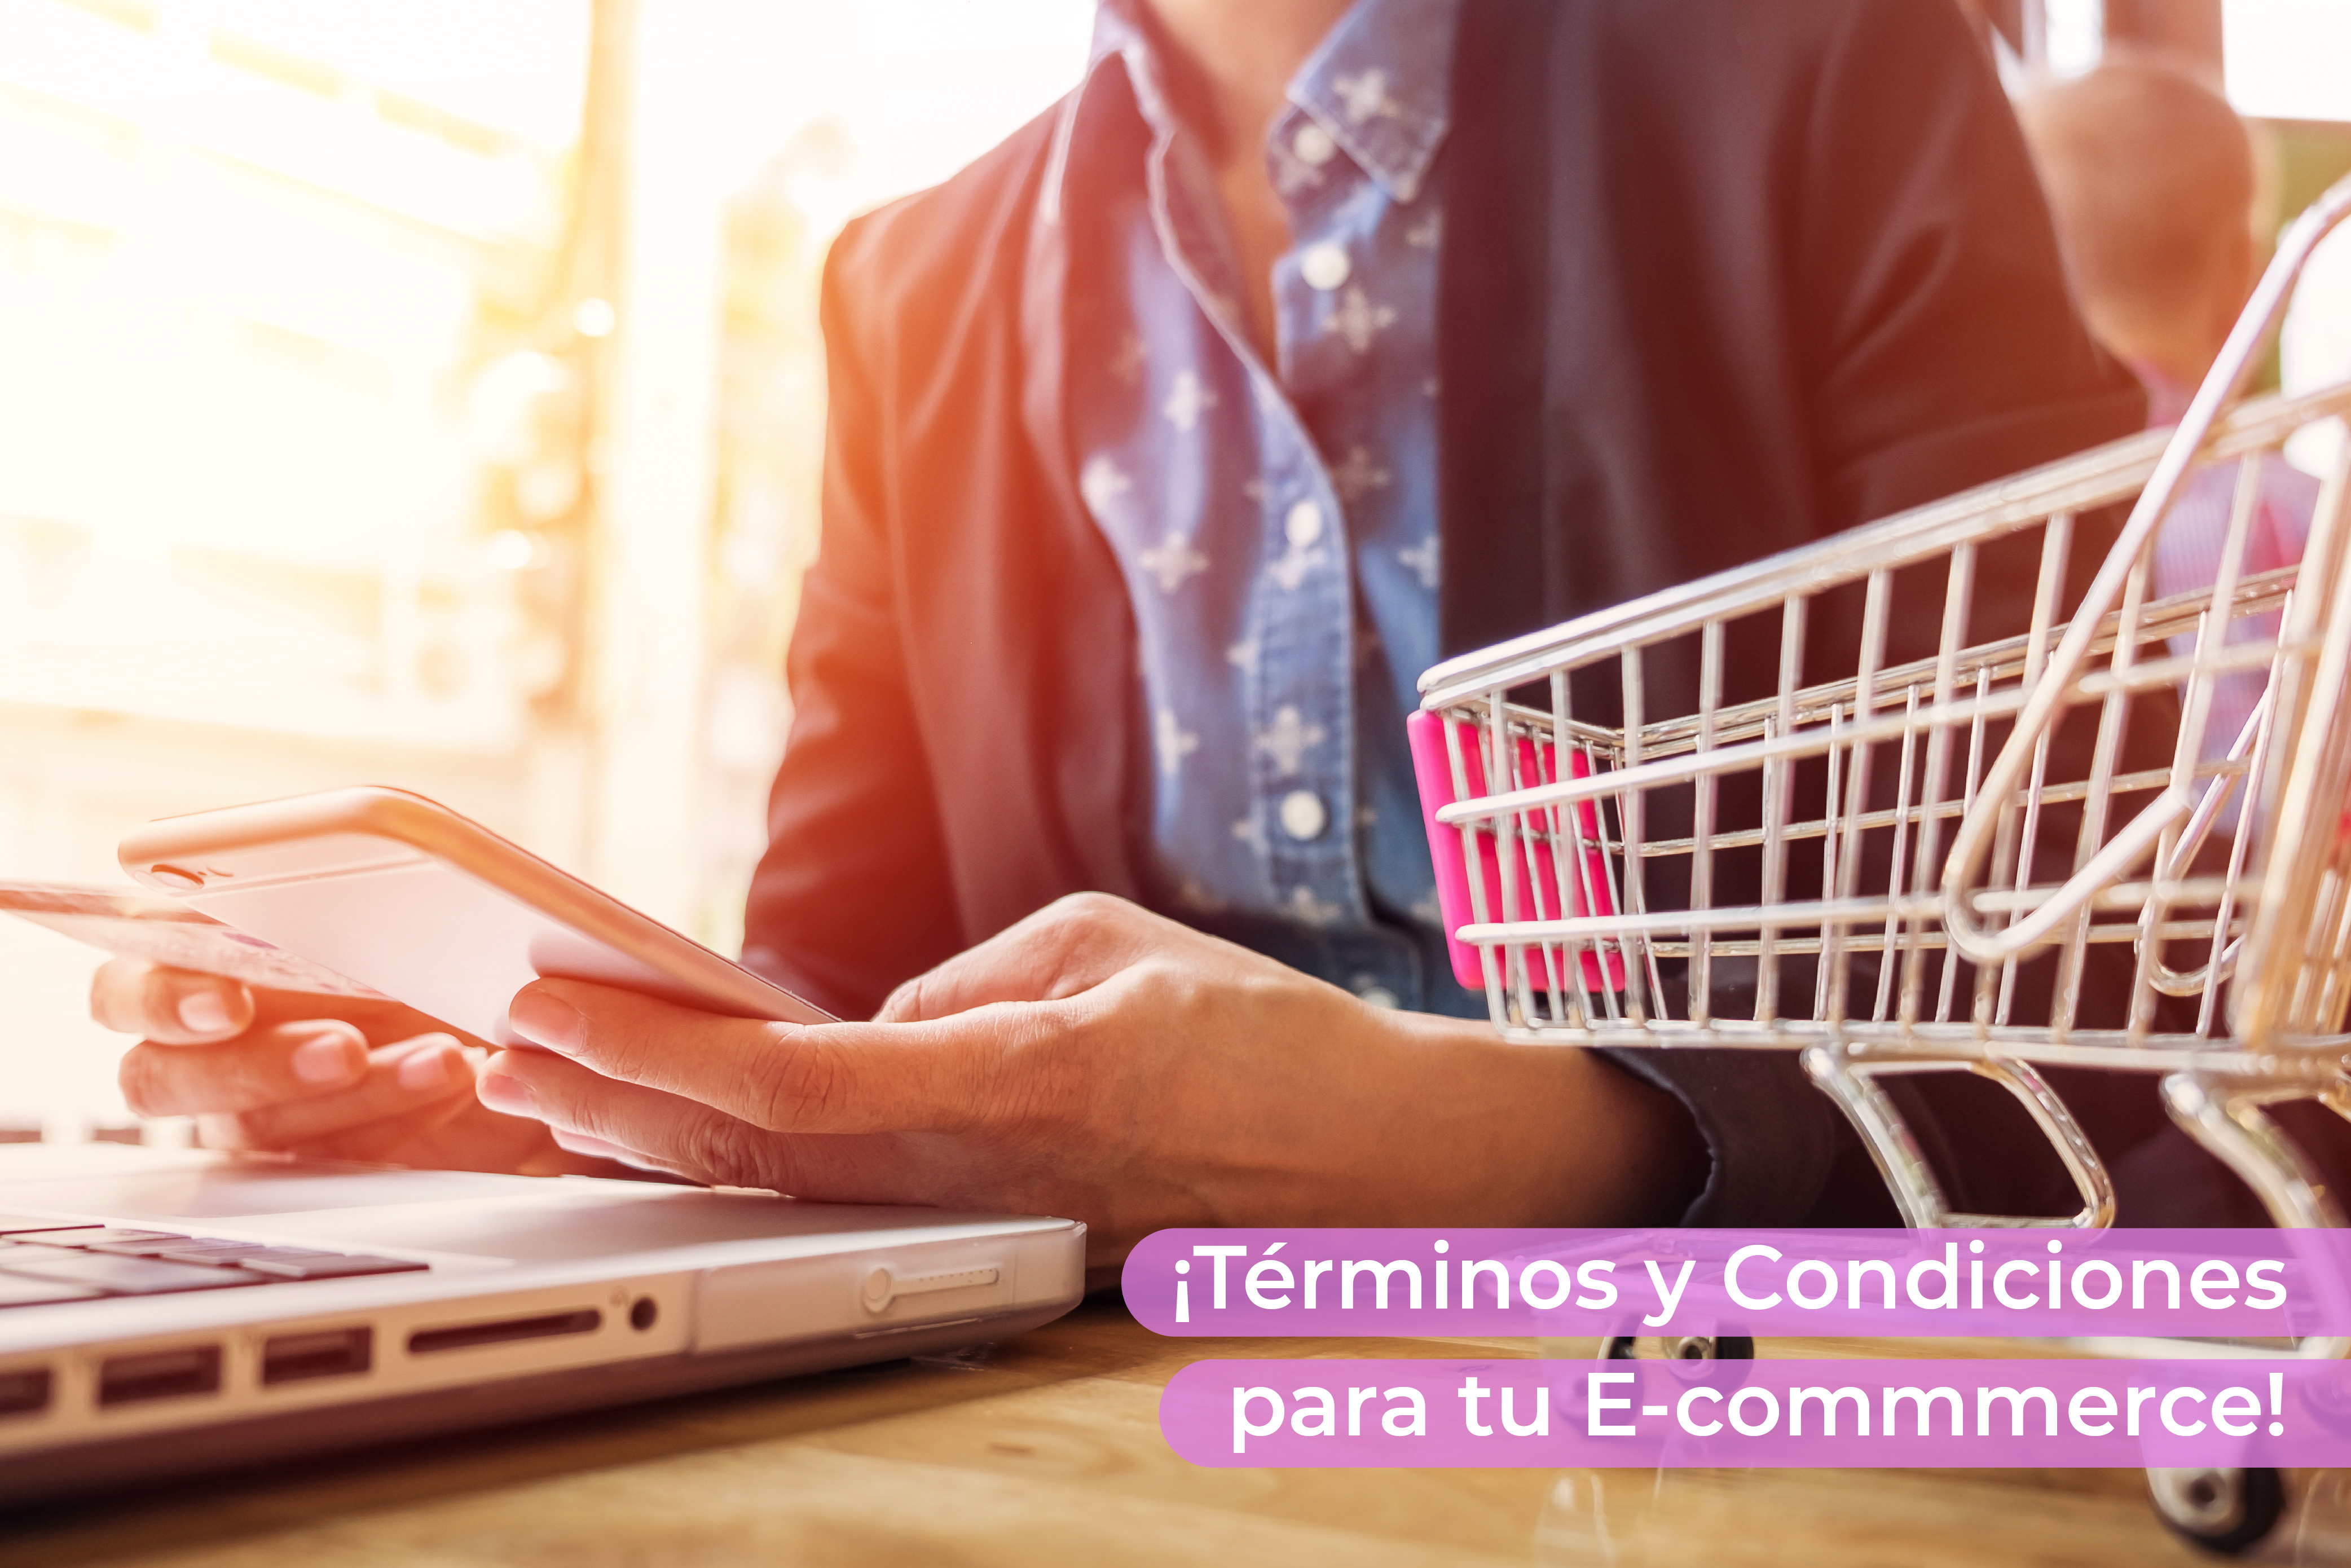 Términos y condiciones para E-commerce